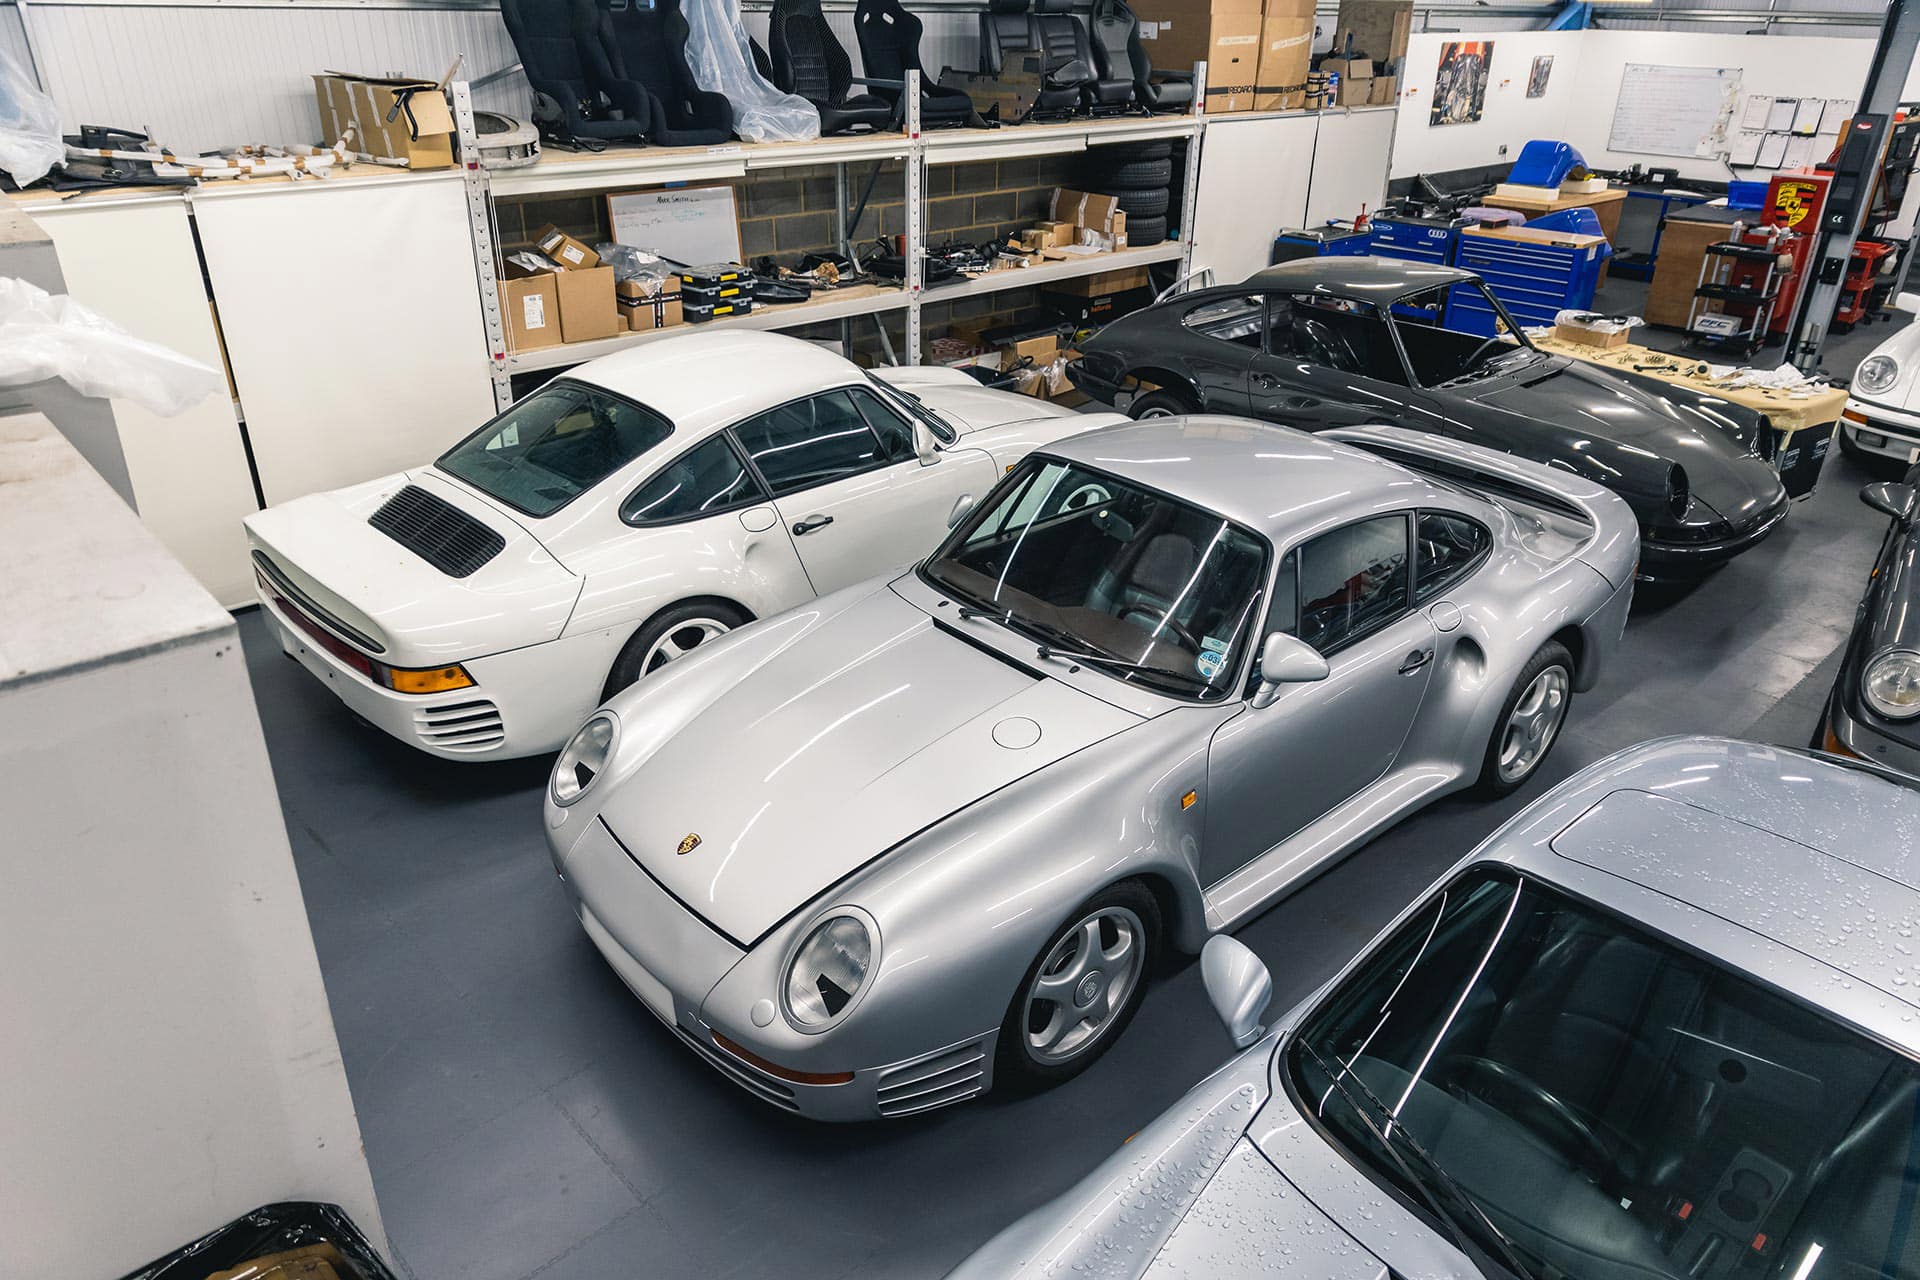 Porsche 959 in workshop